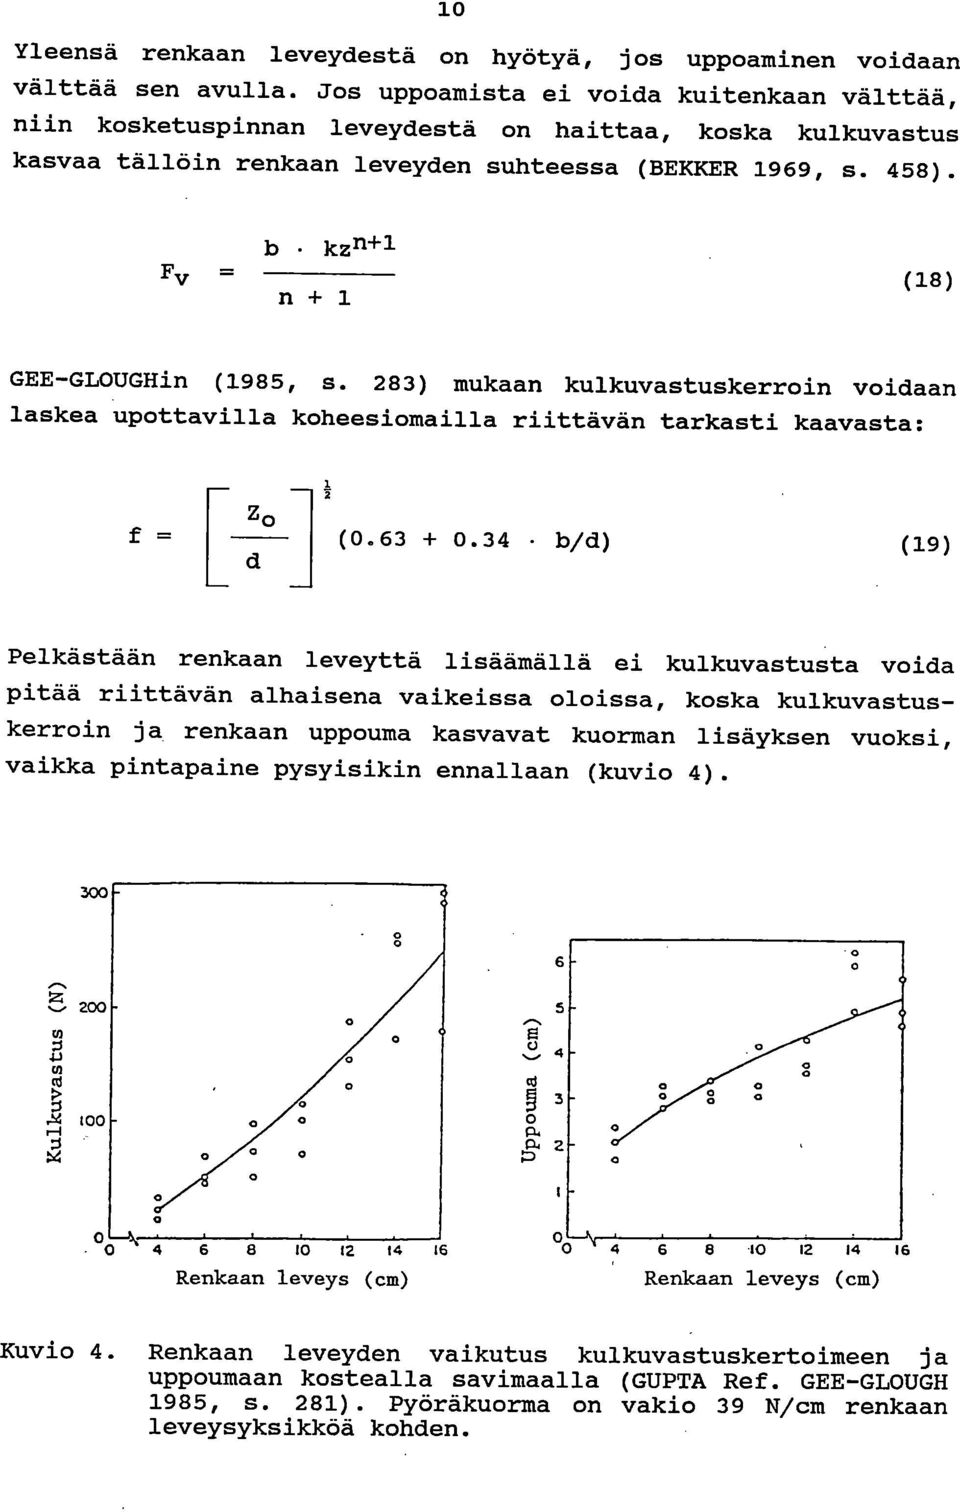 b kz11+1 Fv = n + 1 (18) GEE-GLOUGHin (1985, s. 283) mukaan kulkuvastuskerroin voidaan laskea upottavilla koheesiomailla riittävän tarkasti kaavasta: Zo (0.63 + 0.